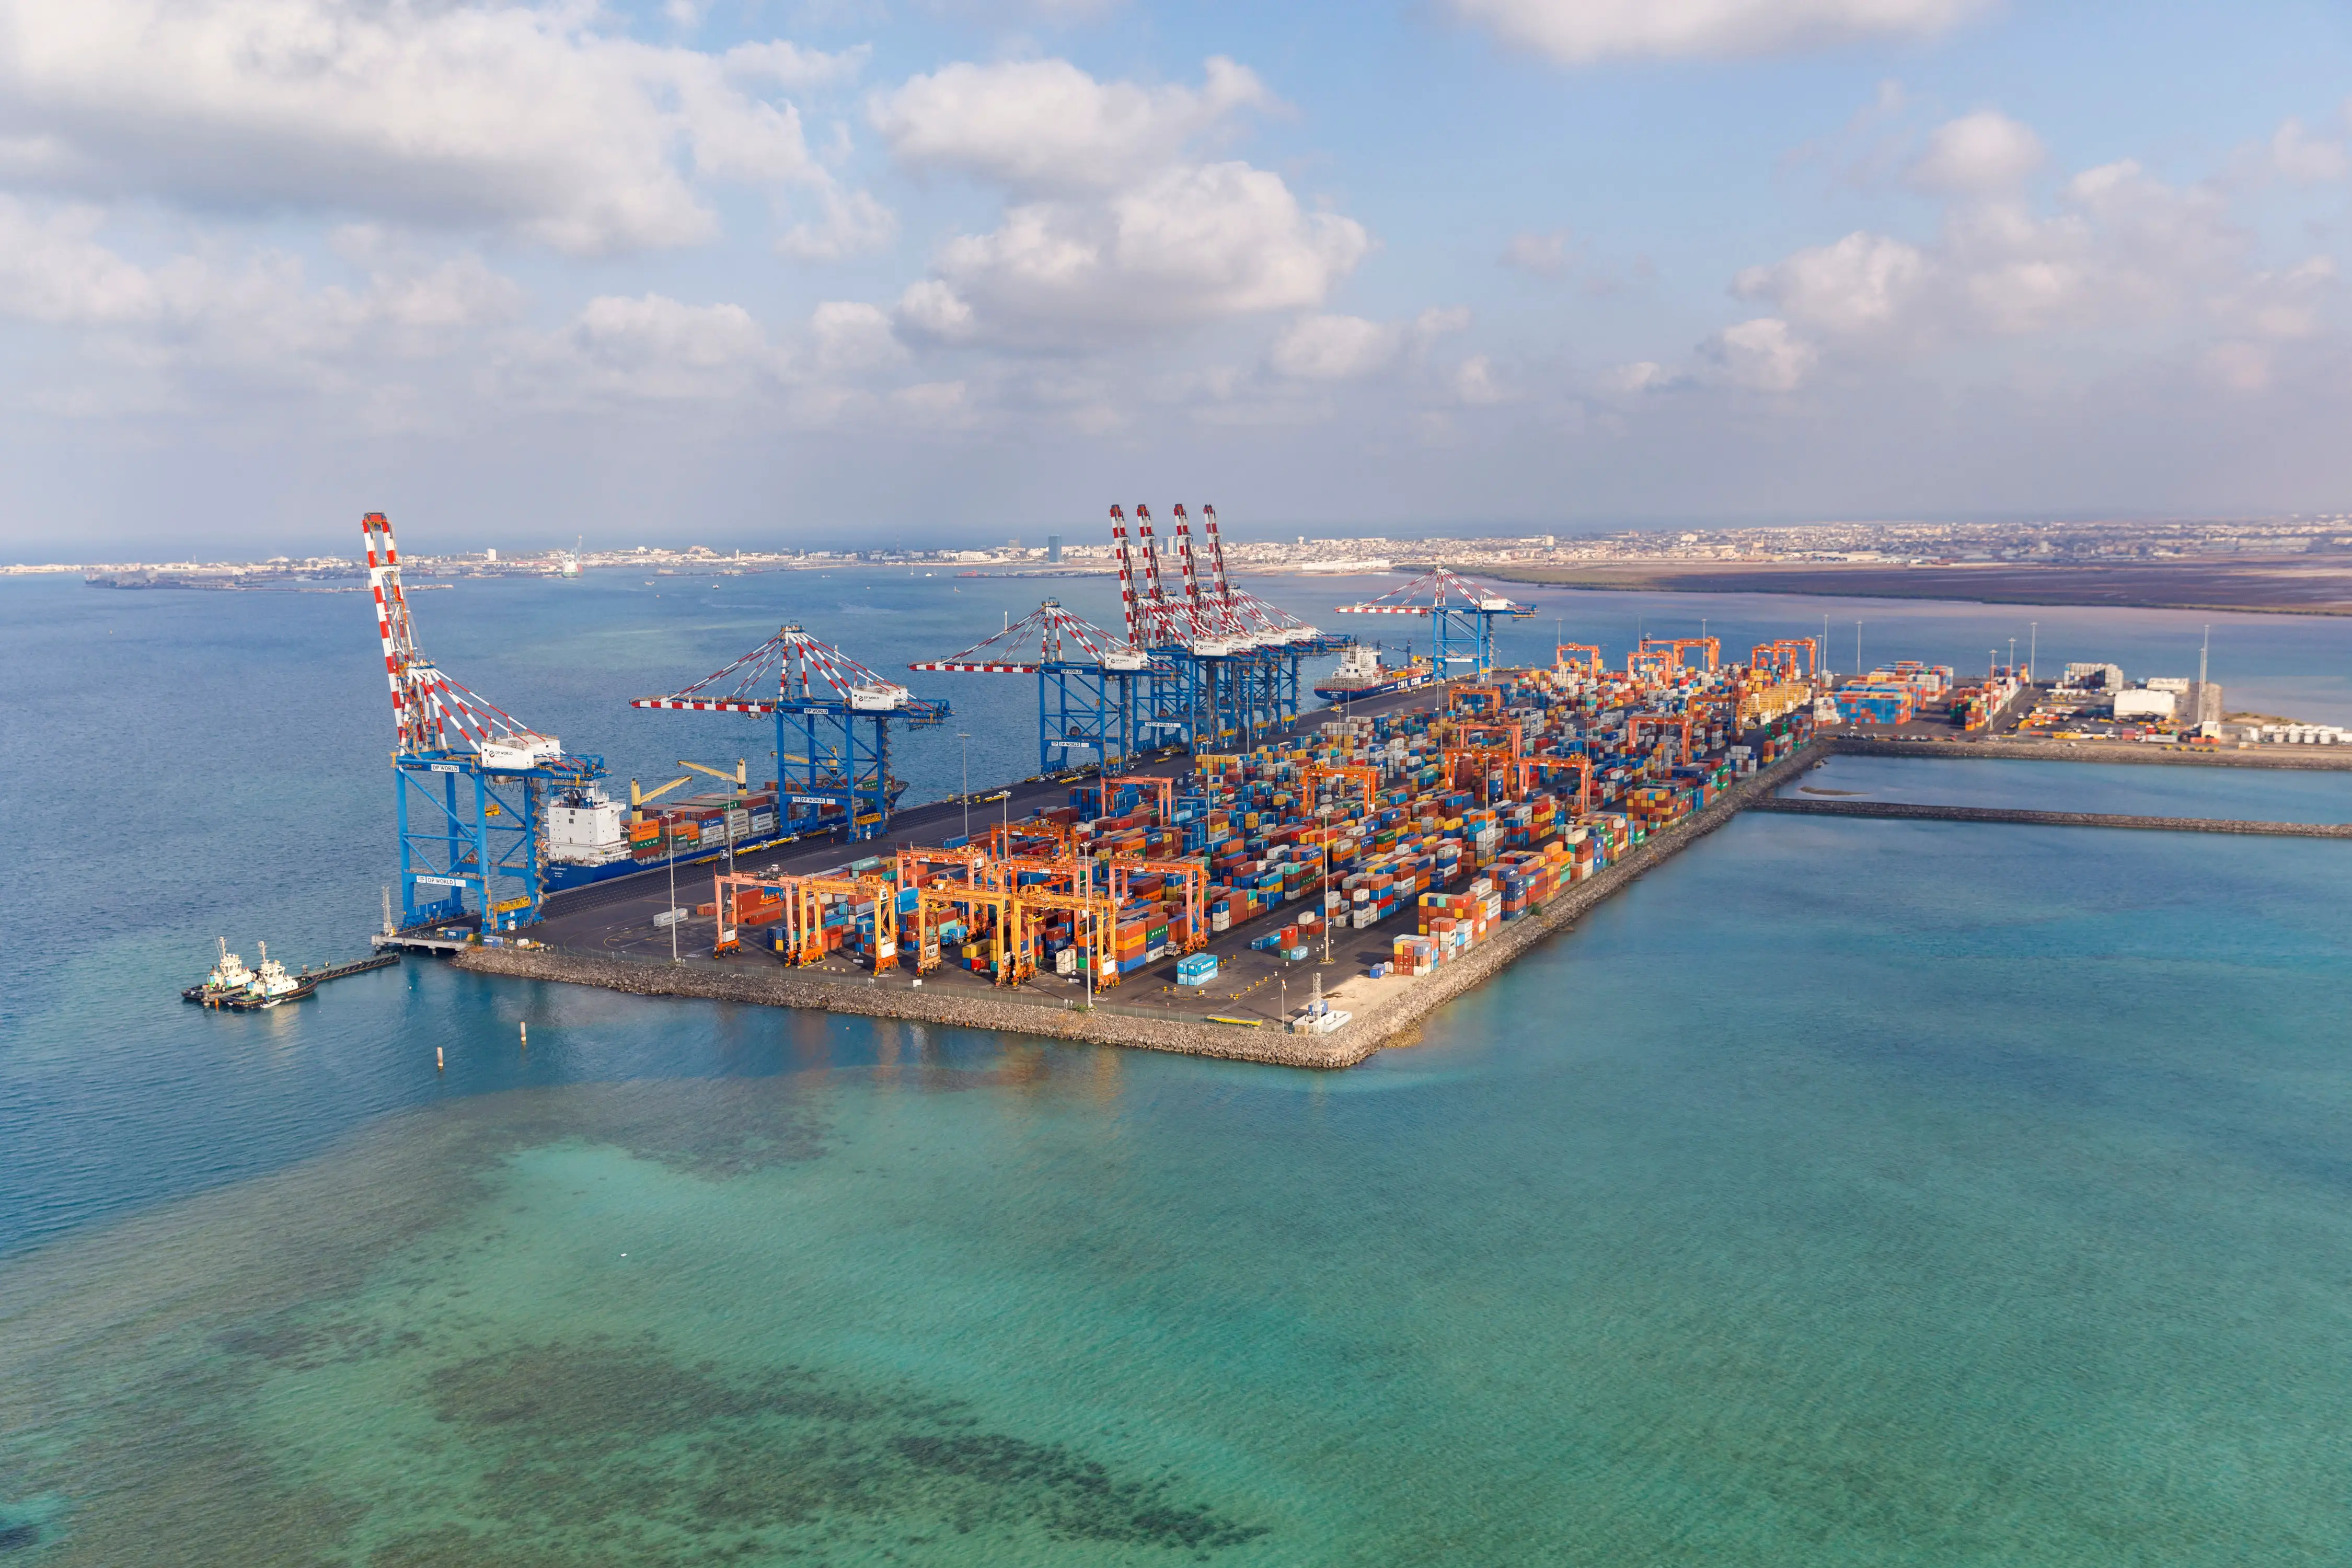 Le terminal à conteneurs de Doraleh, un hub commercial et logistique de premier plan entre l'Asie, l'Afrique et le reste du monde. © Présidence de Djibouti